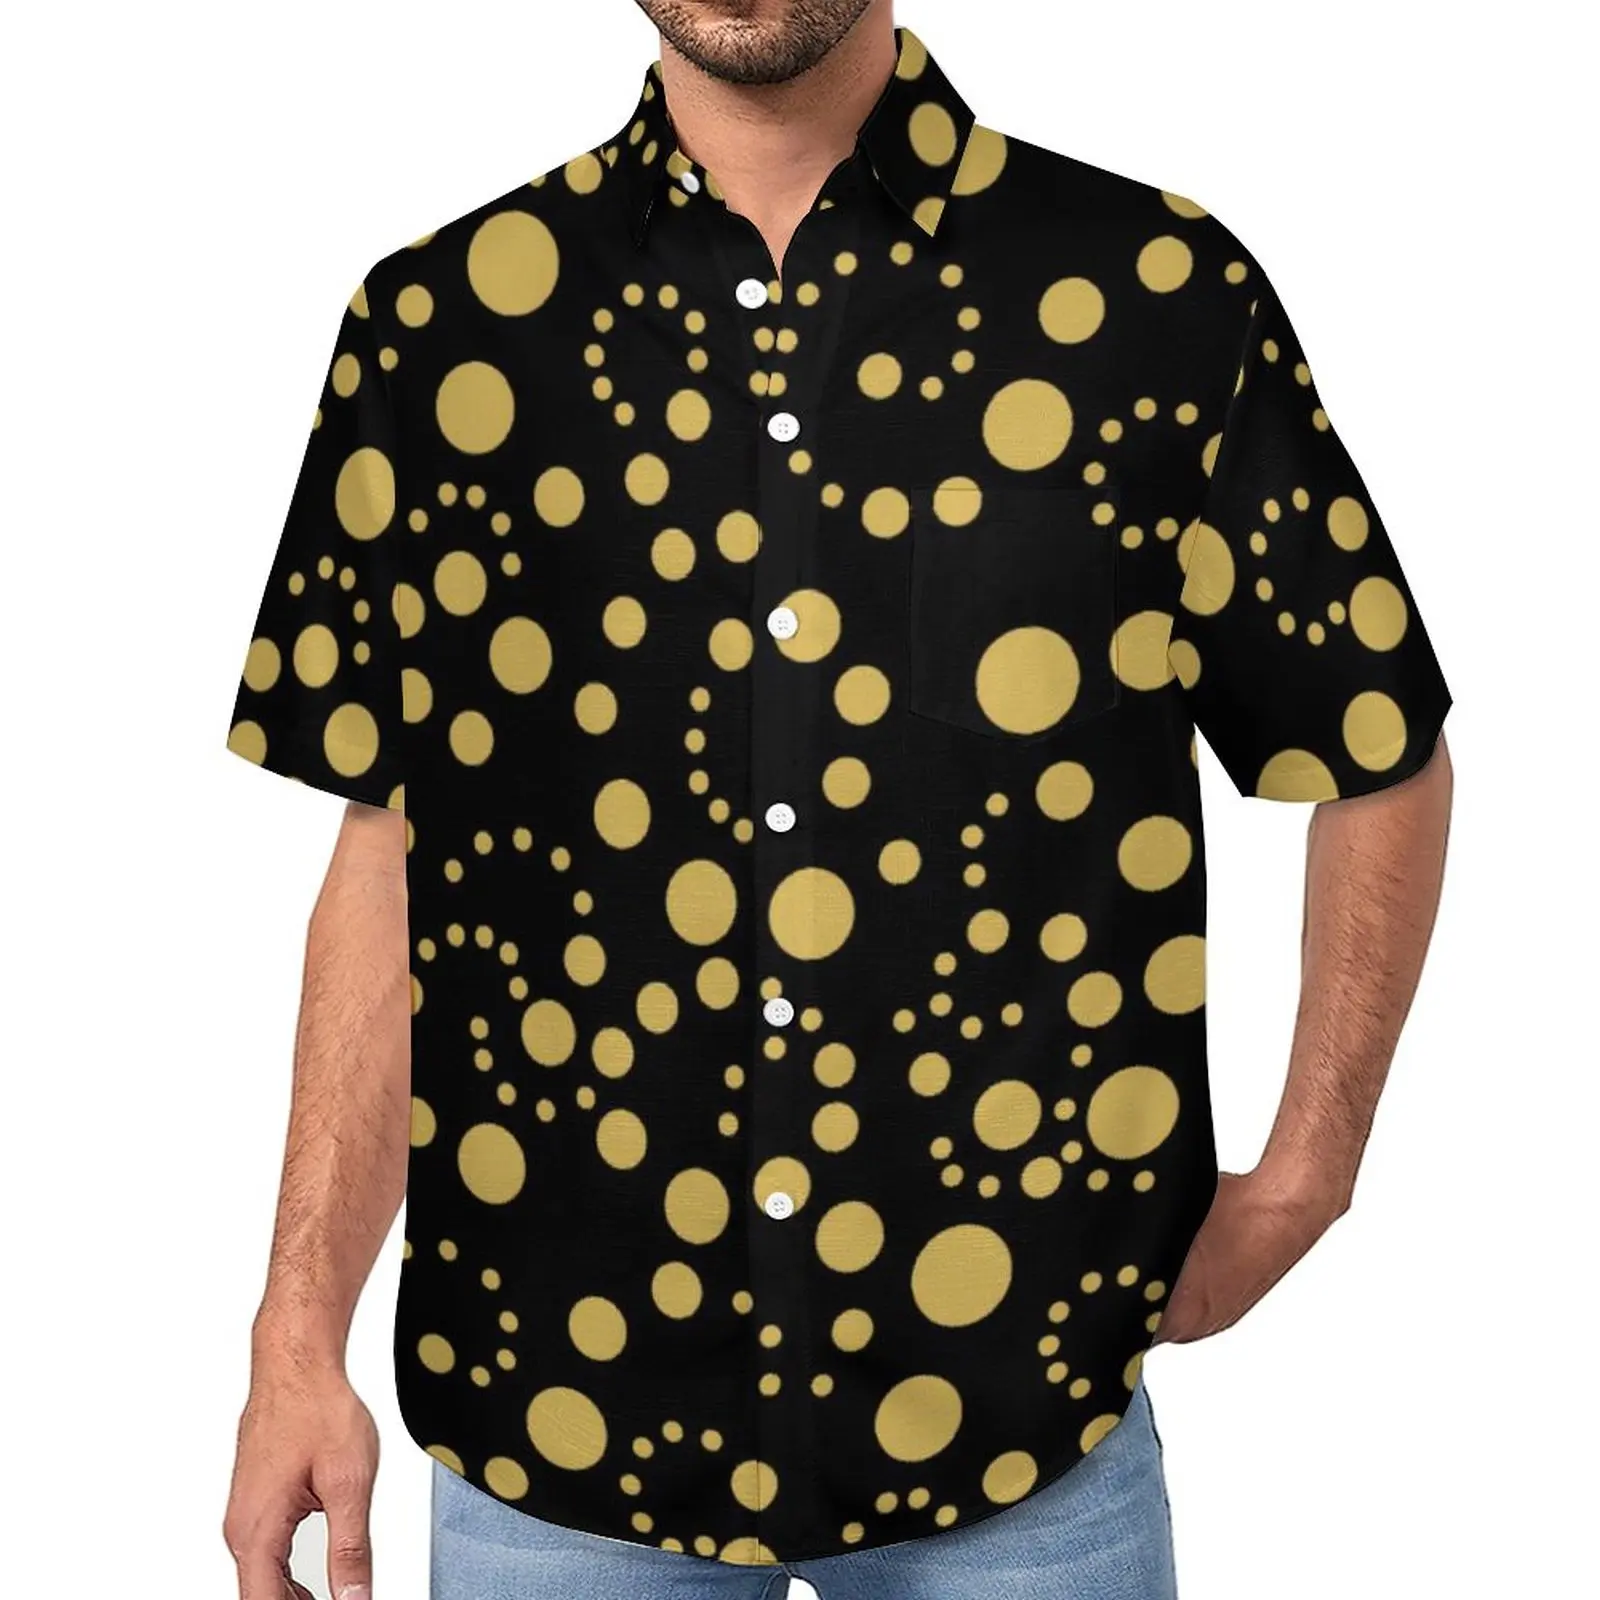 

Gold Polka Dot Casual Shirt Spots Print Vacation Loose Shirt Hawaii Fashion Blouses Short Sleeve Printed Oversize Tops